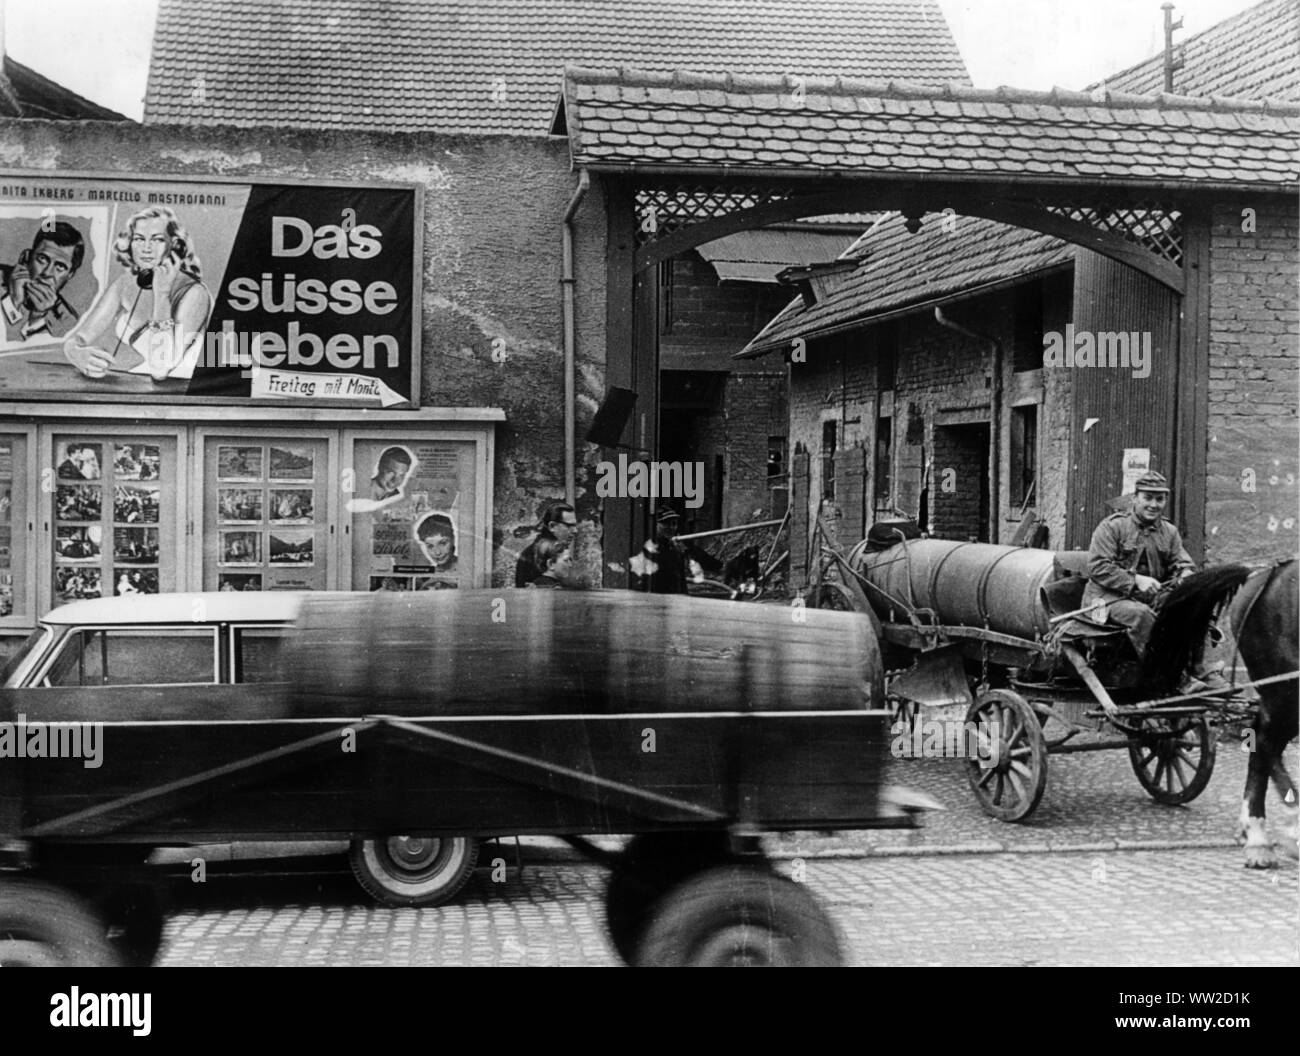 Un contraste : lisier passer une ville bavaroise sur 22.02.1961 en face d'une publicité pour le film 'Das süsse Leben' (la douce vie - La dolce vita). Dans le monde d'utilisation | Banque D'Images